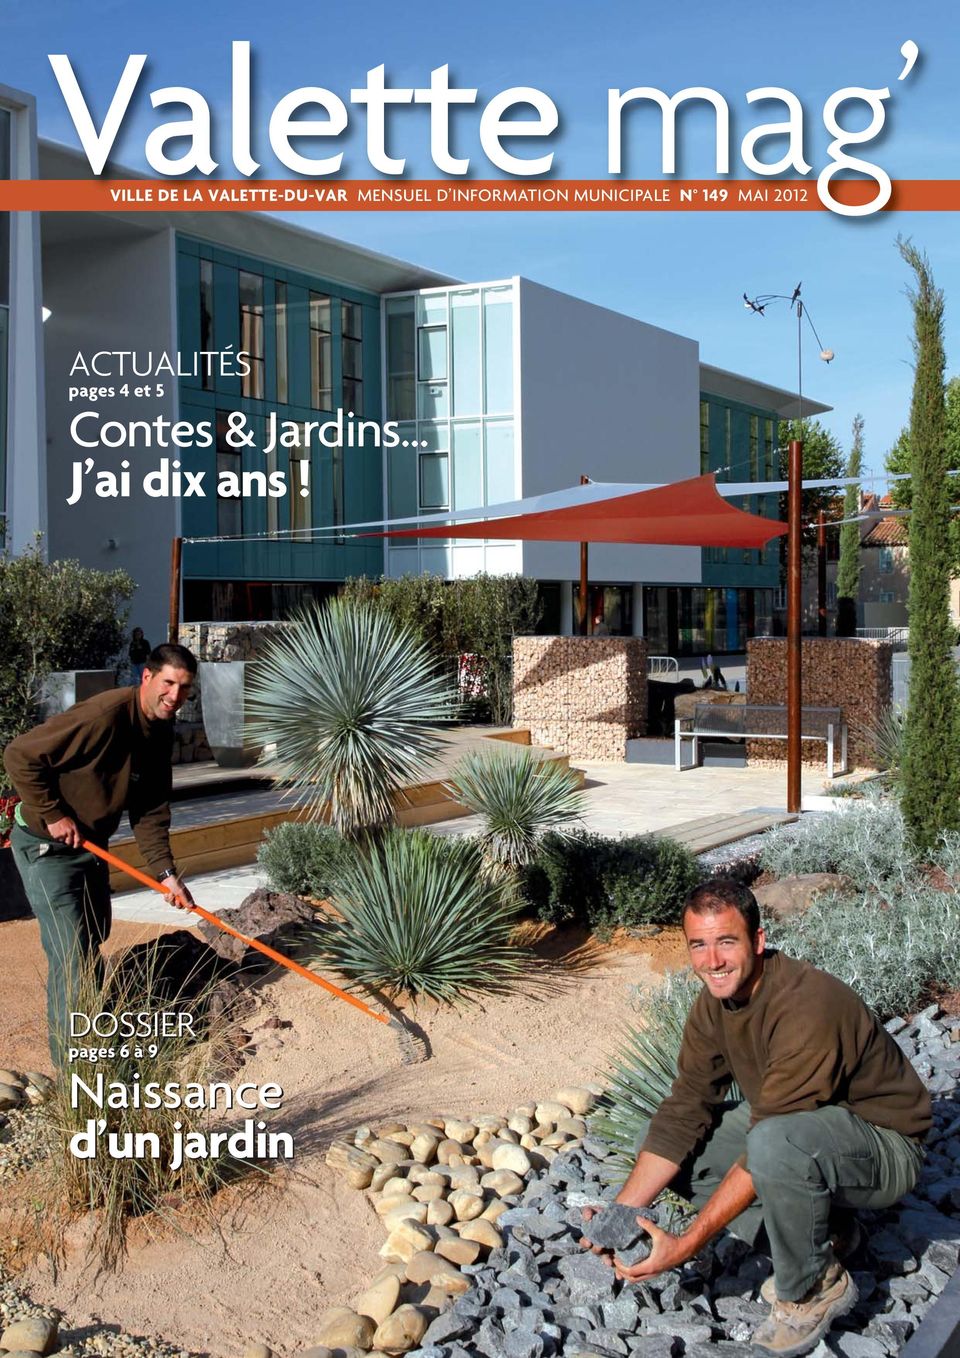 2012 ACTUALITÉS pages 4 et 5 Contes & Jardins